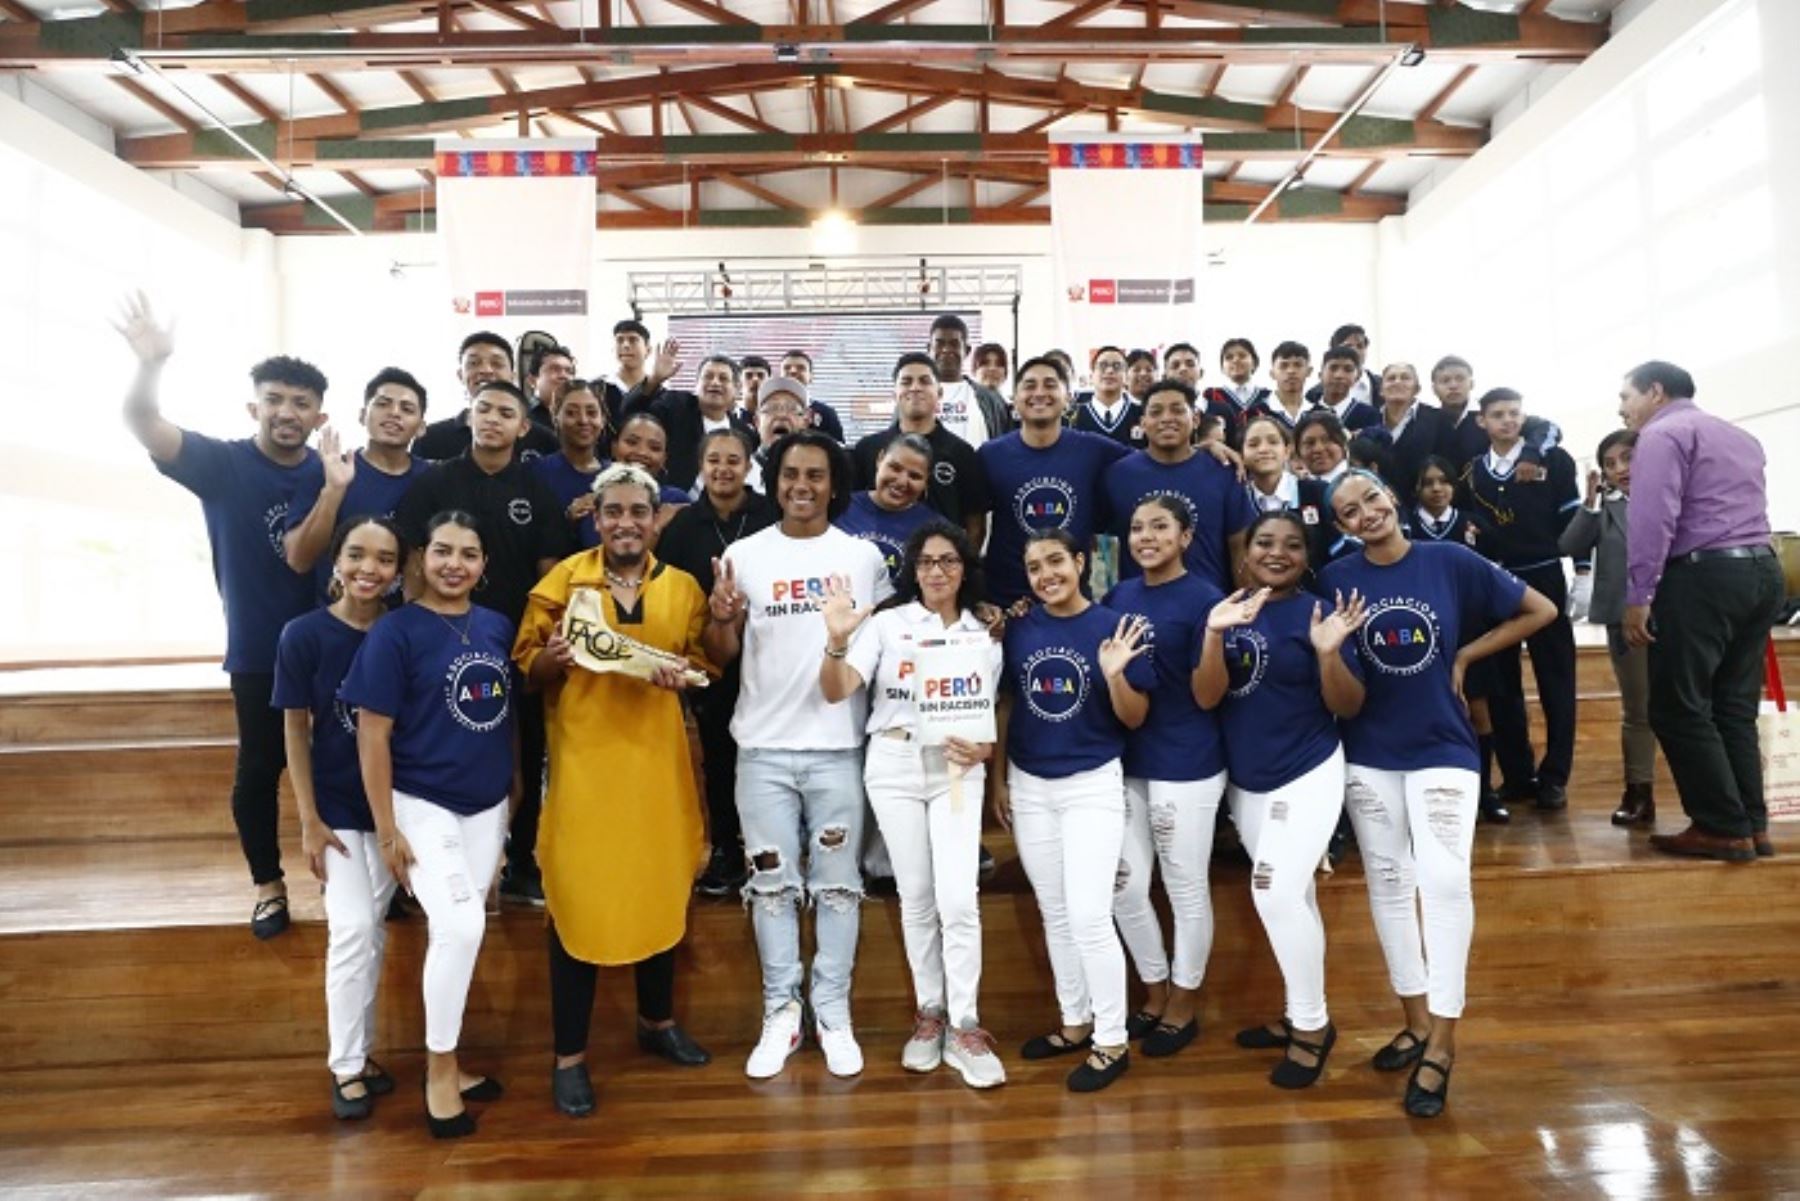 Mincul lanzó la estrategia "Perú sin Racismo" para luchar contra la discriminación racial